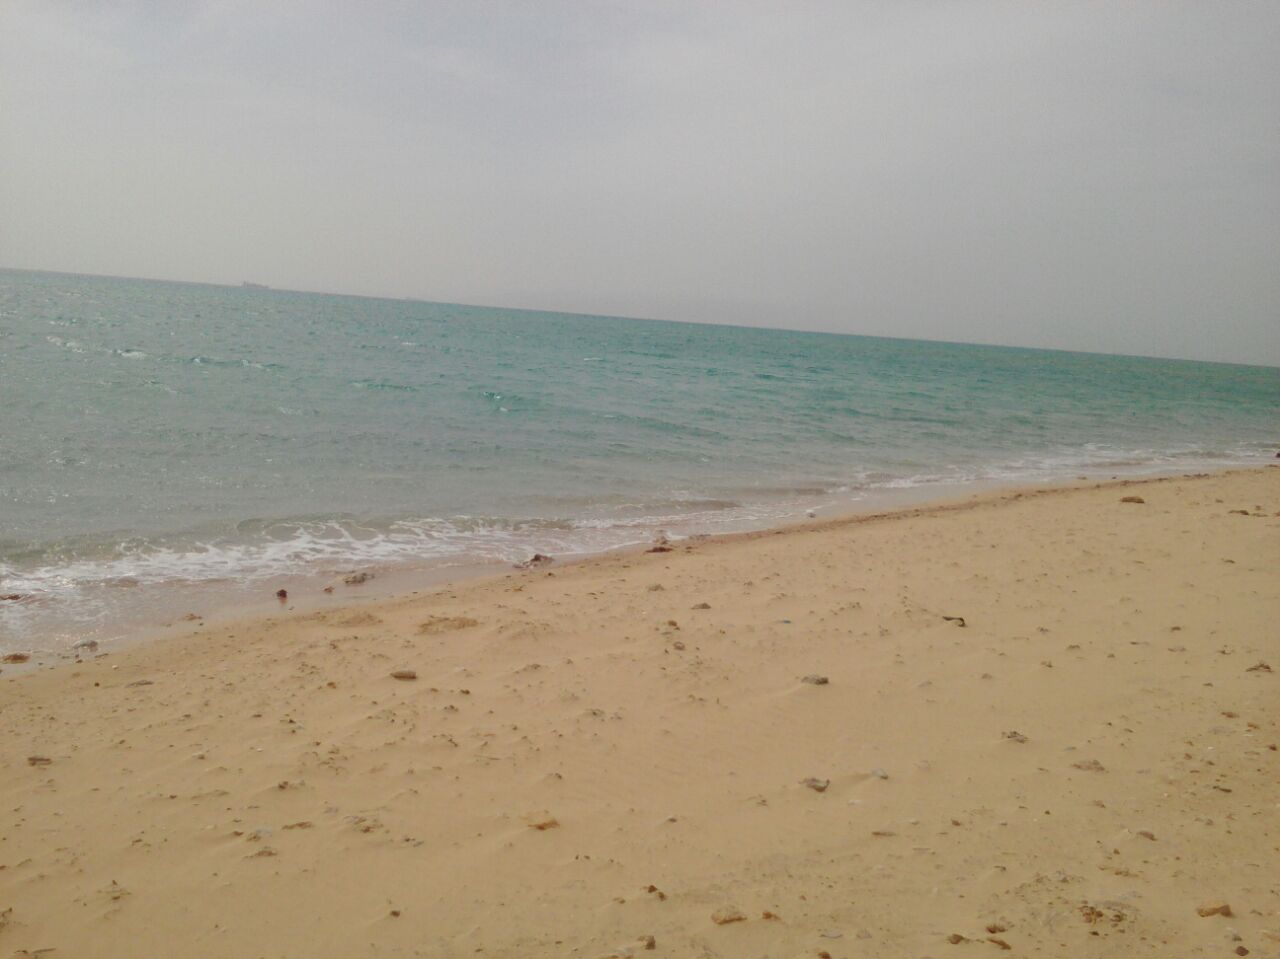 Zdjęcie Abu Nunes Beach z przestronna zatoka